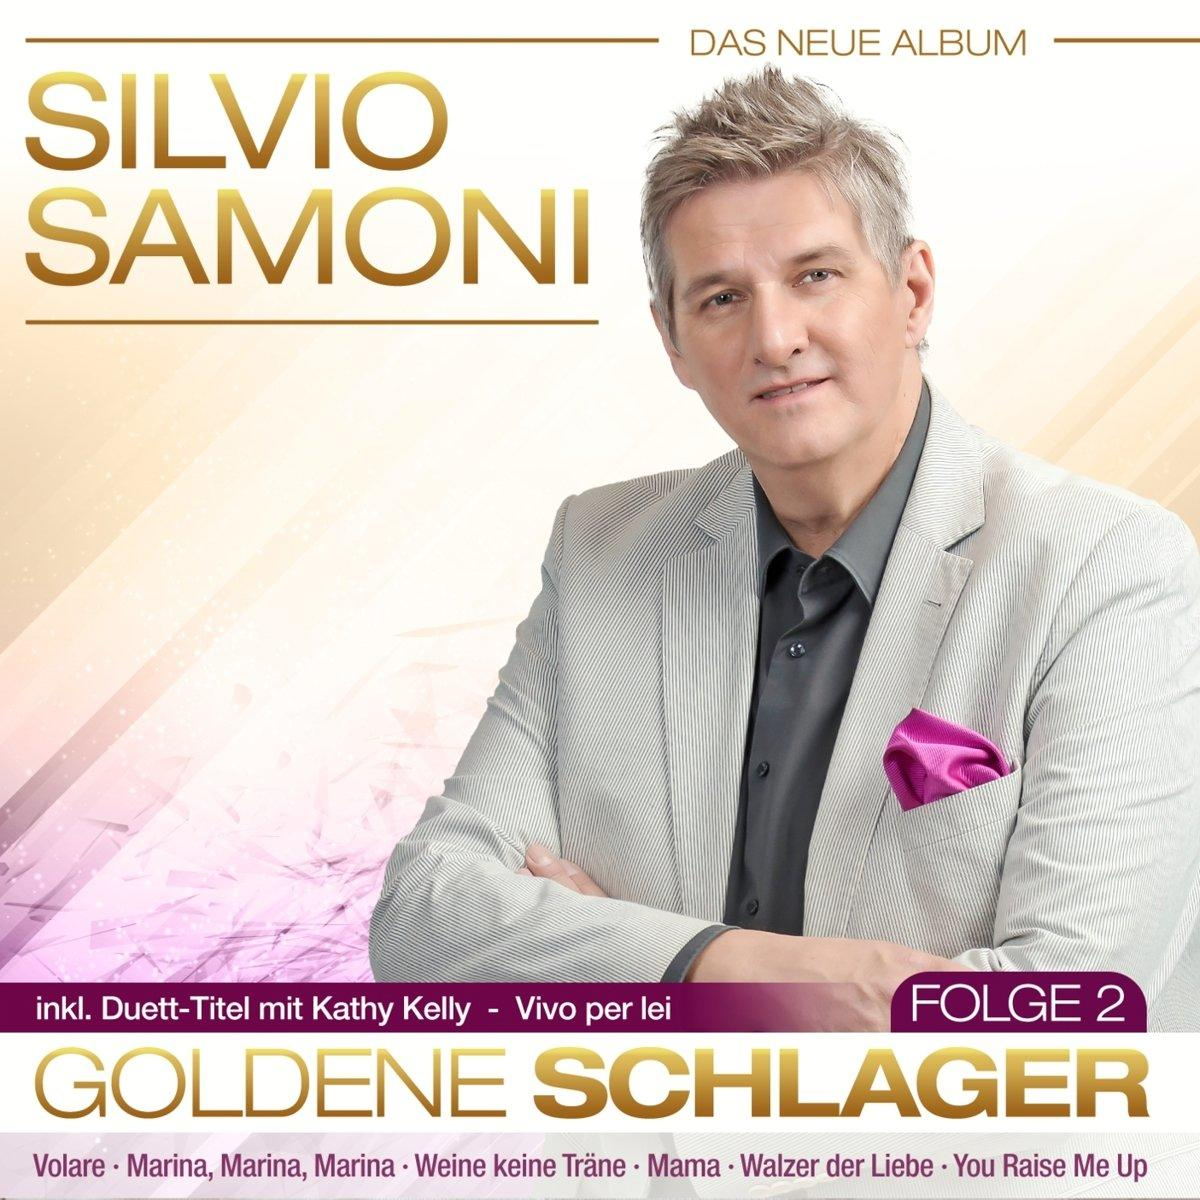 (CD) Schlager-Folge Goldene Samoni - Silvio 2 -